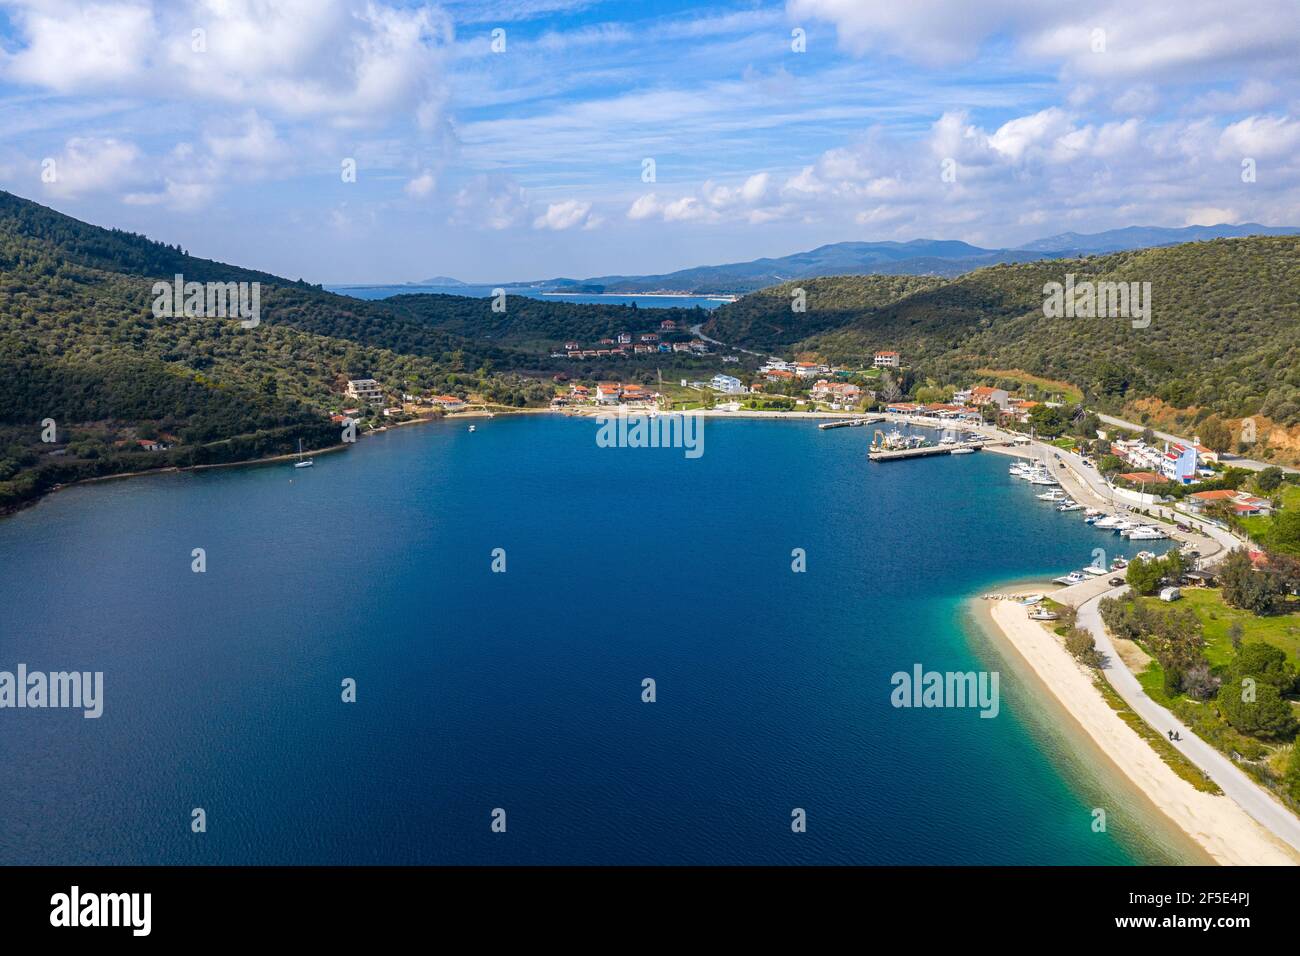 Vista panoramica dall'alto sul mare Mediterraneo blu acqua con bianca spiaggia di sabbia lungo verdi colline costa, yacht e barche molo, alberghi turistici, Sum Foto Stock